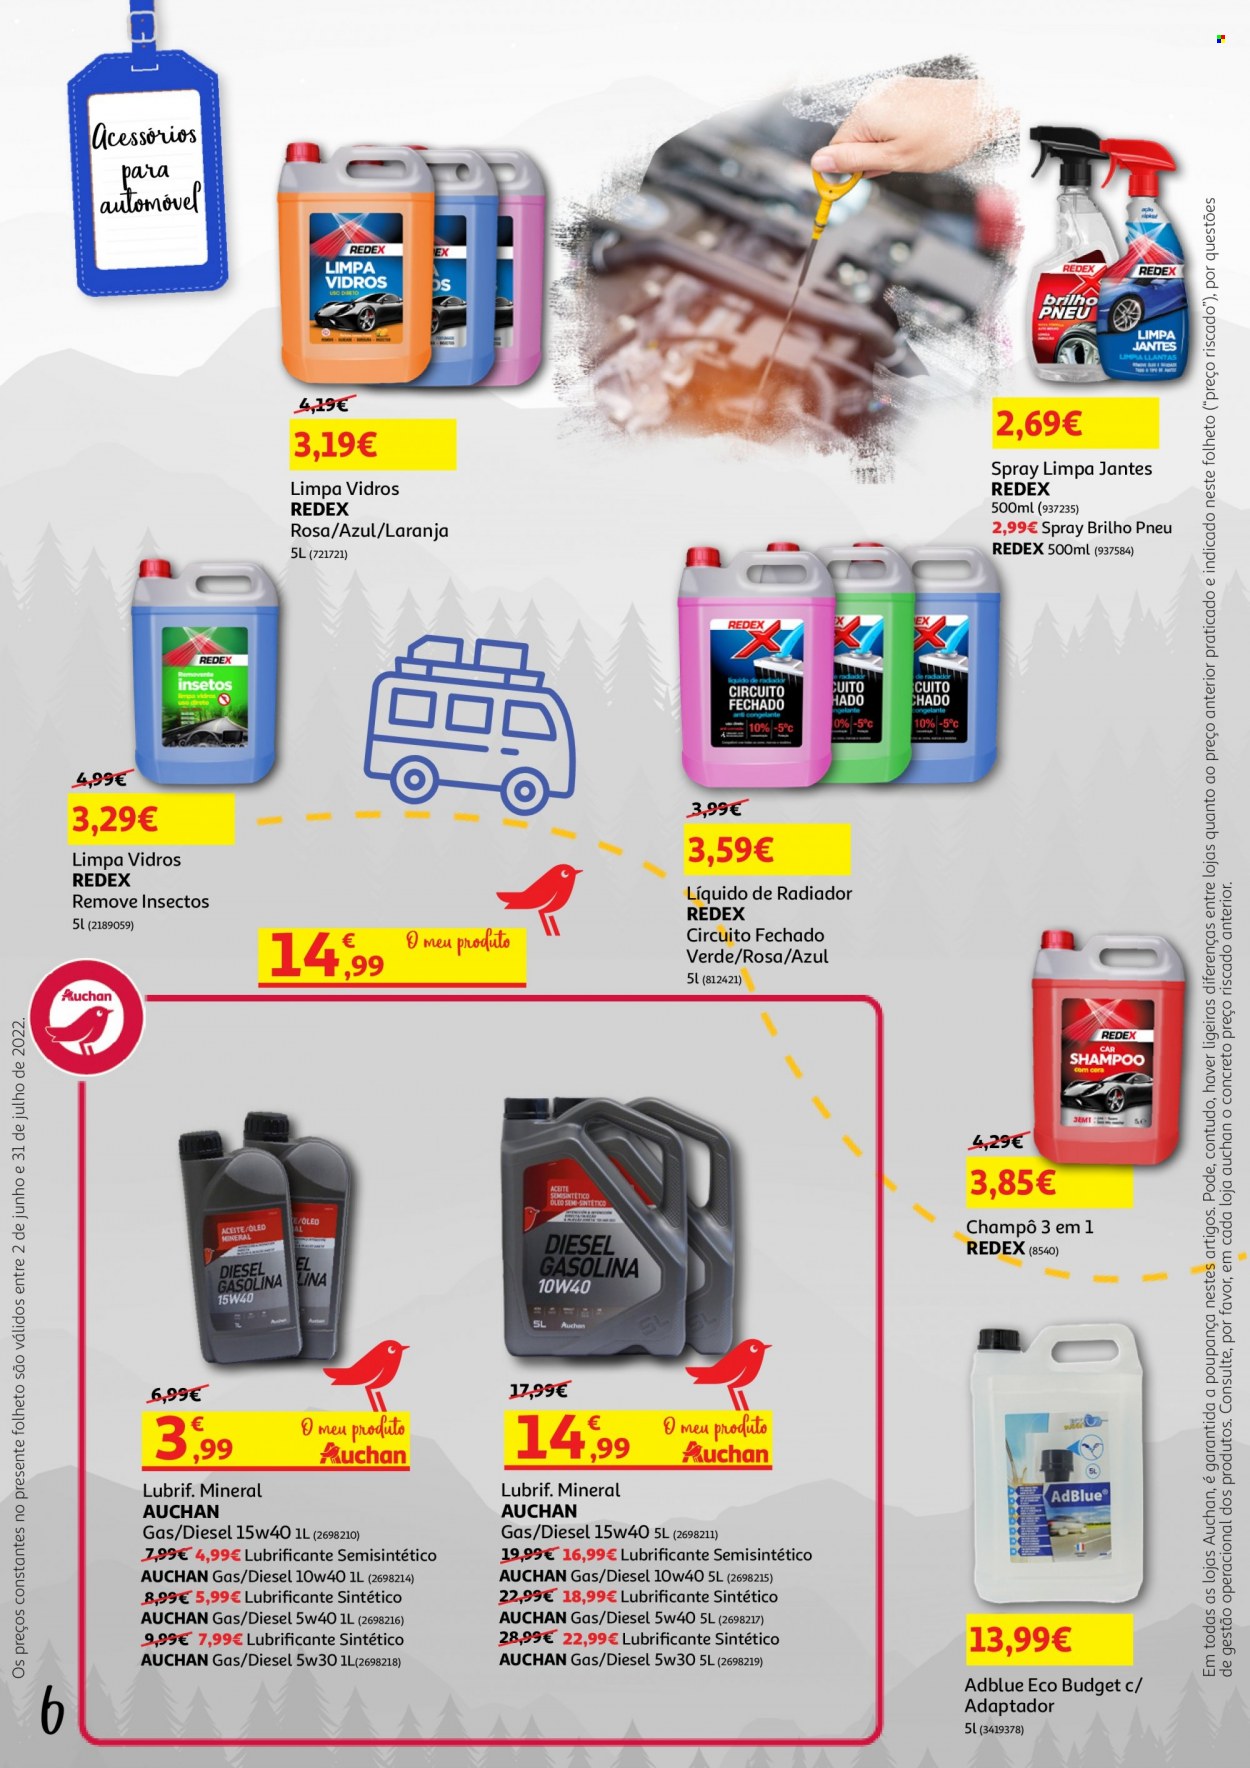 thumbnail - Folheto Auchan - 6.6.2022 - 31.7.2022 - Produtos em promoção - laranja, limpa vidros, car shampoo, brilho pneu, Redex. Página 6.